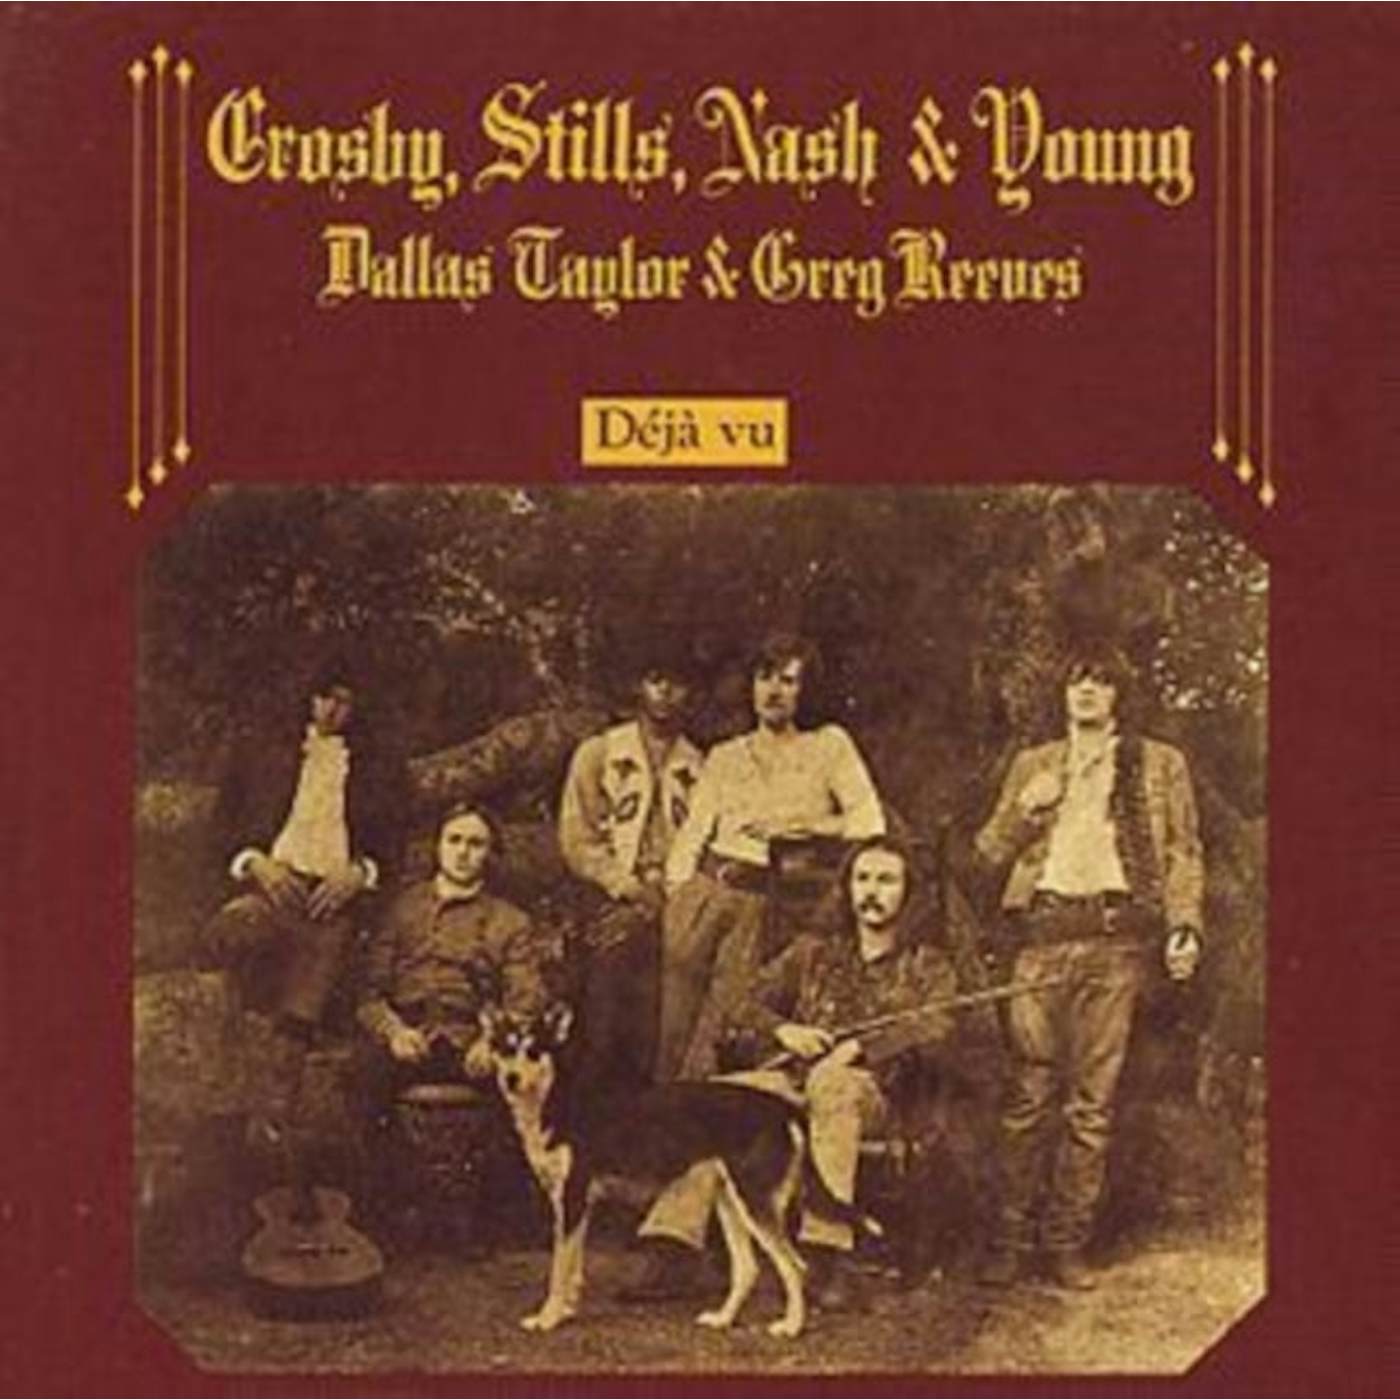 Crosby, Stills, Nash & Young CD - Deja Vu